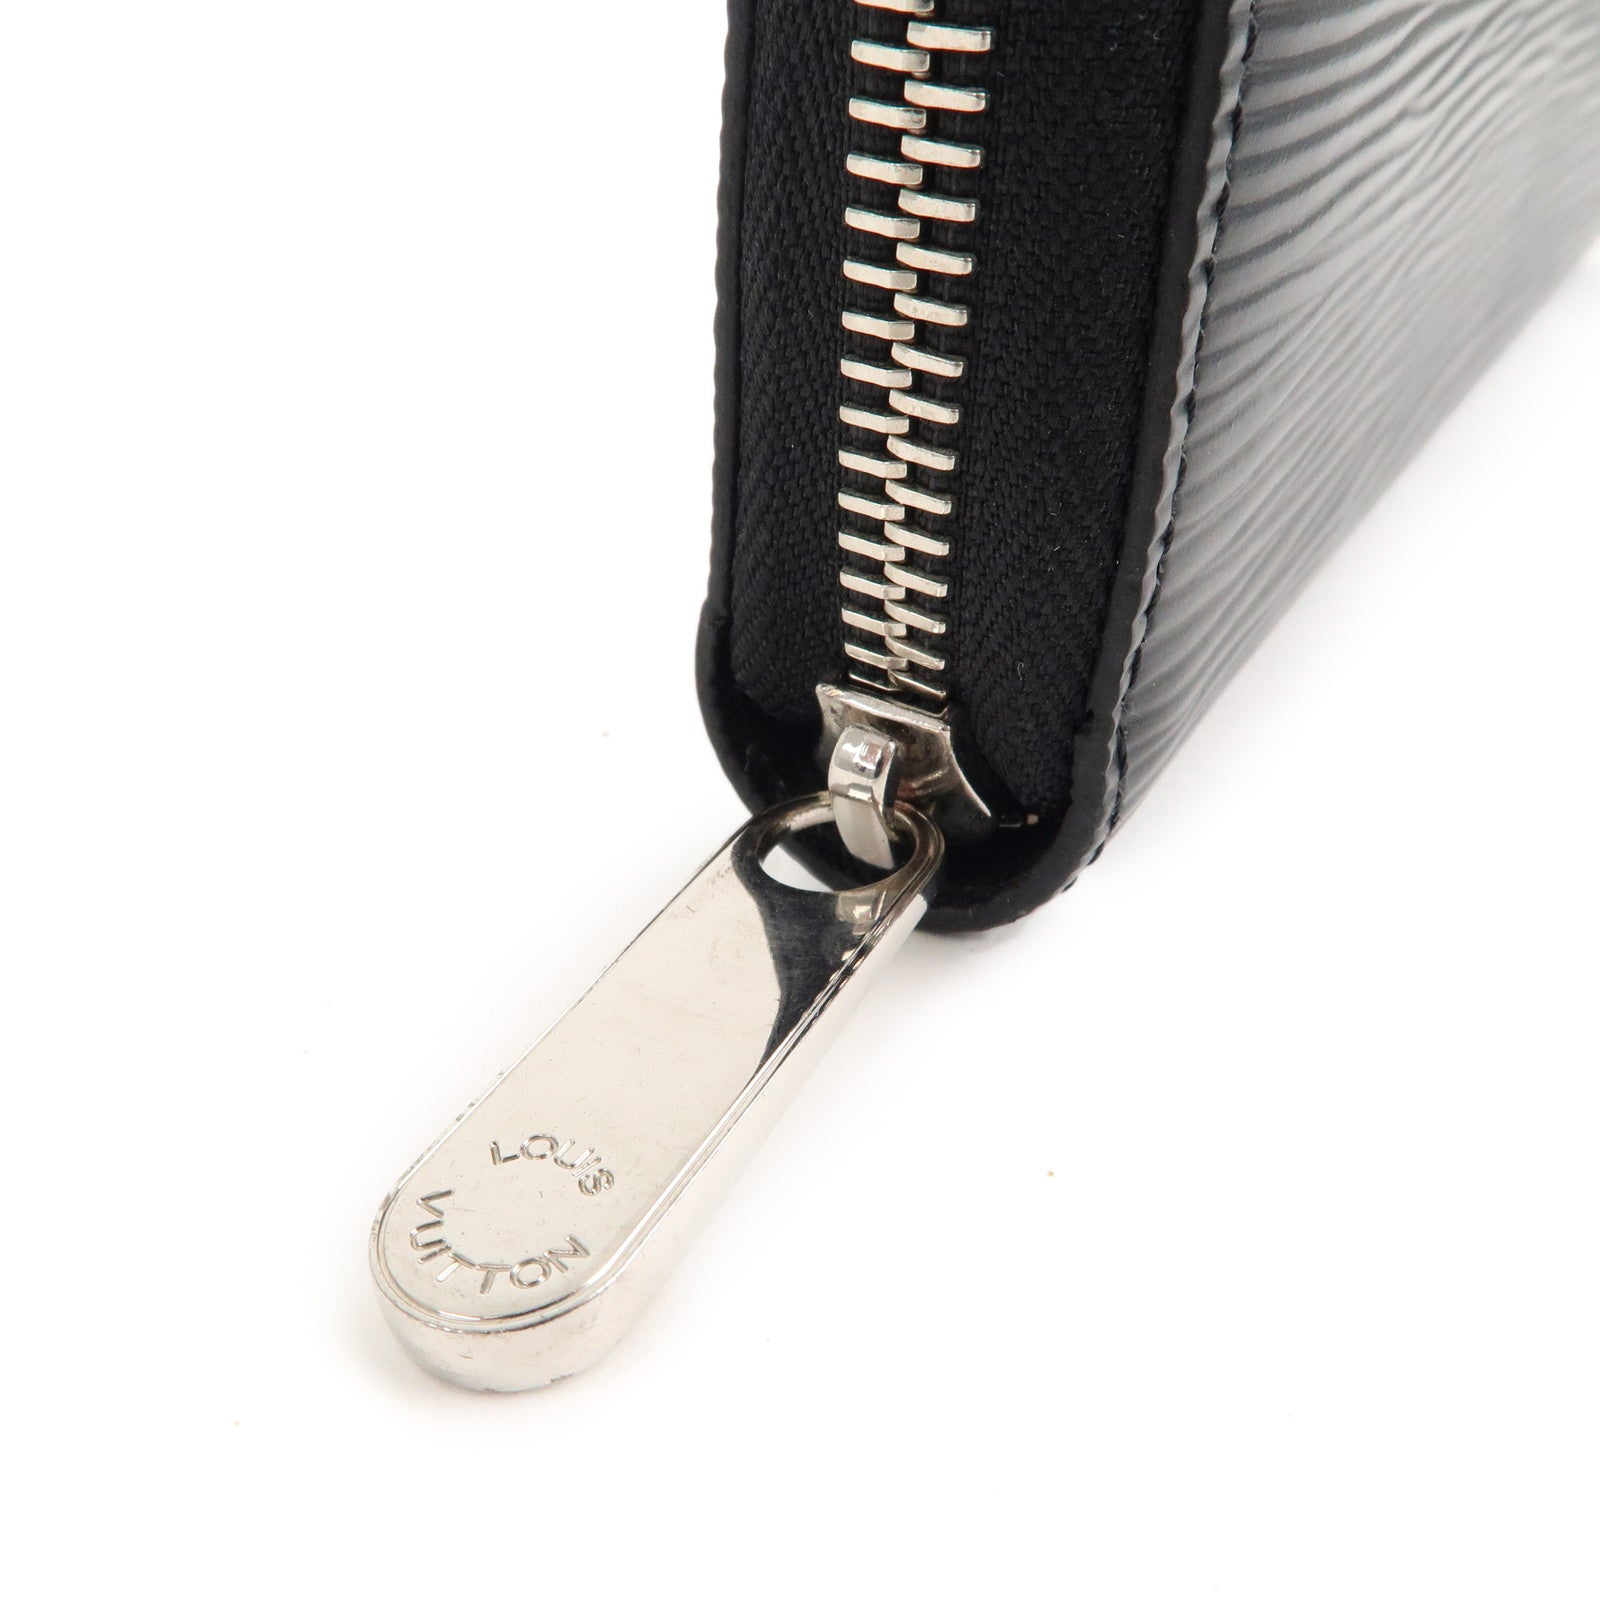 Louis Vuitton Vintage - Epi Zippy Wallet - Black - Leather and Epi